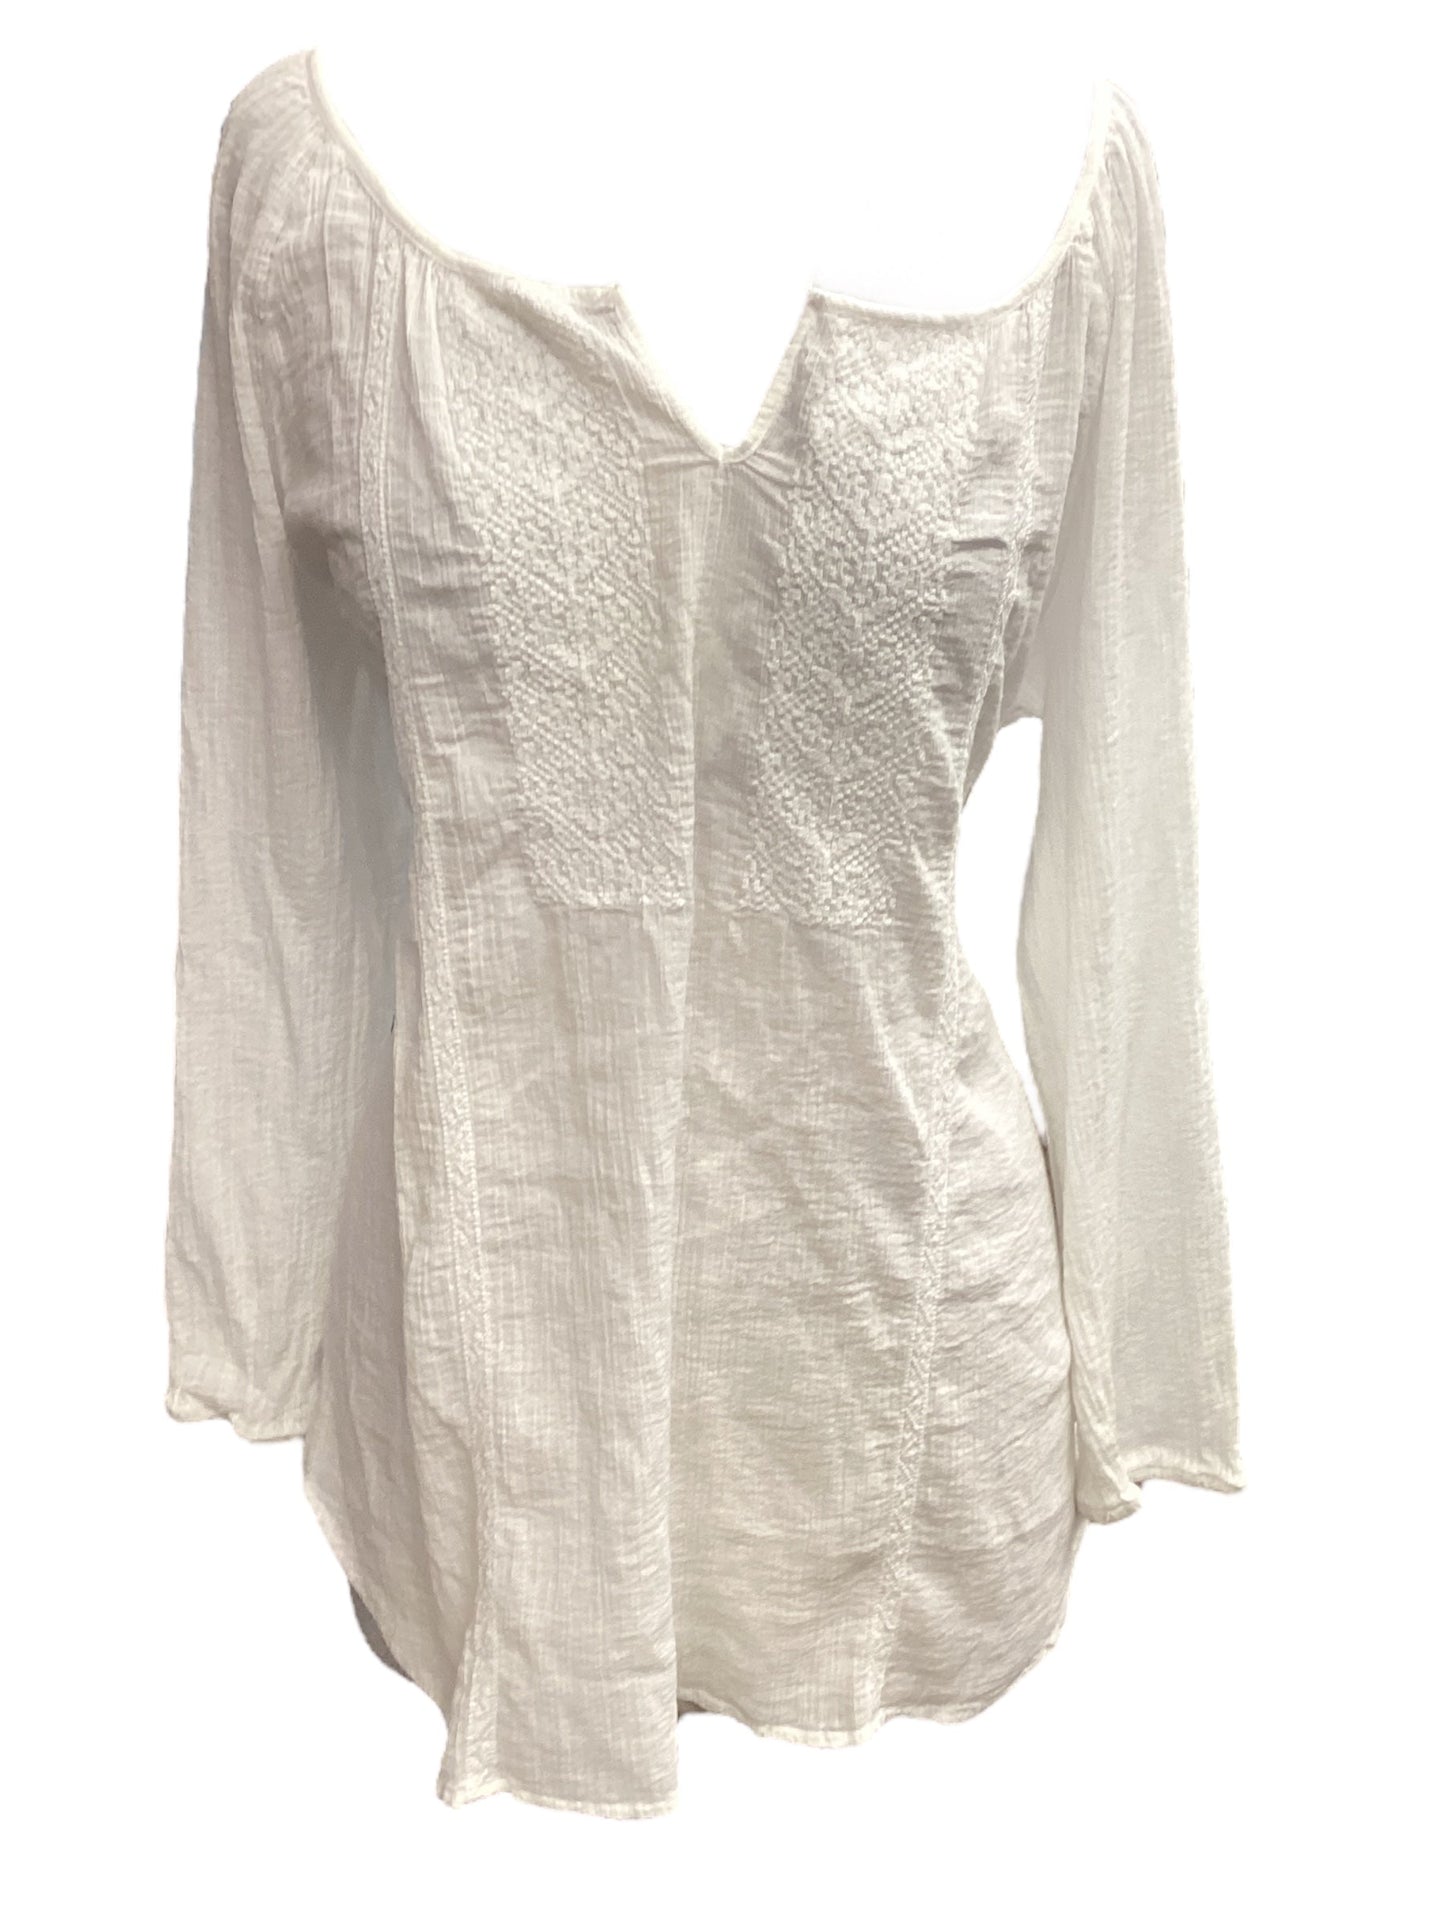 White Top 3/4 Sleeve Lauren By Ralph Lauren, Size Xl